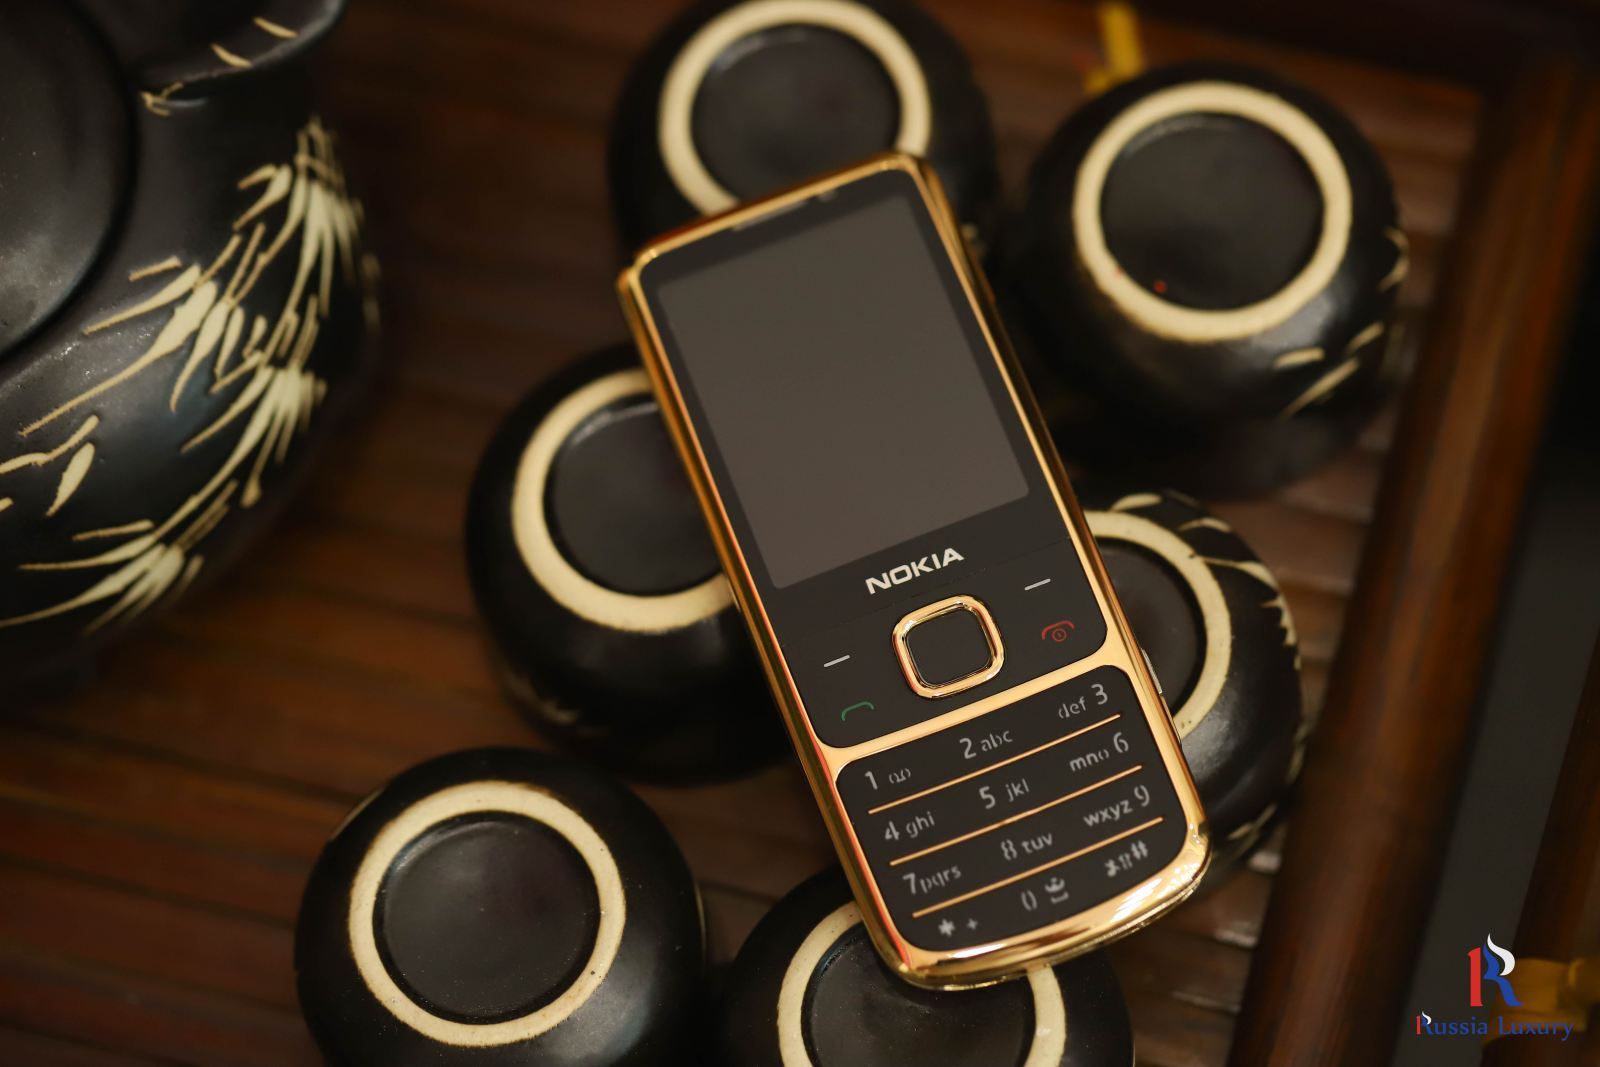 Nokia 6700 Đen vàng hồng 